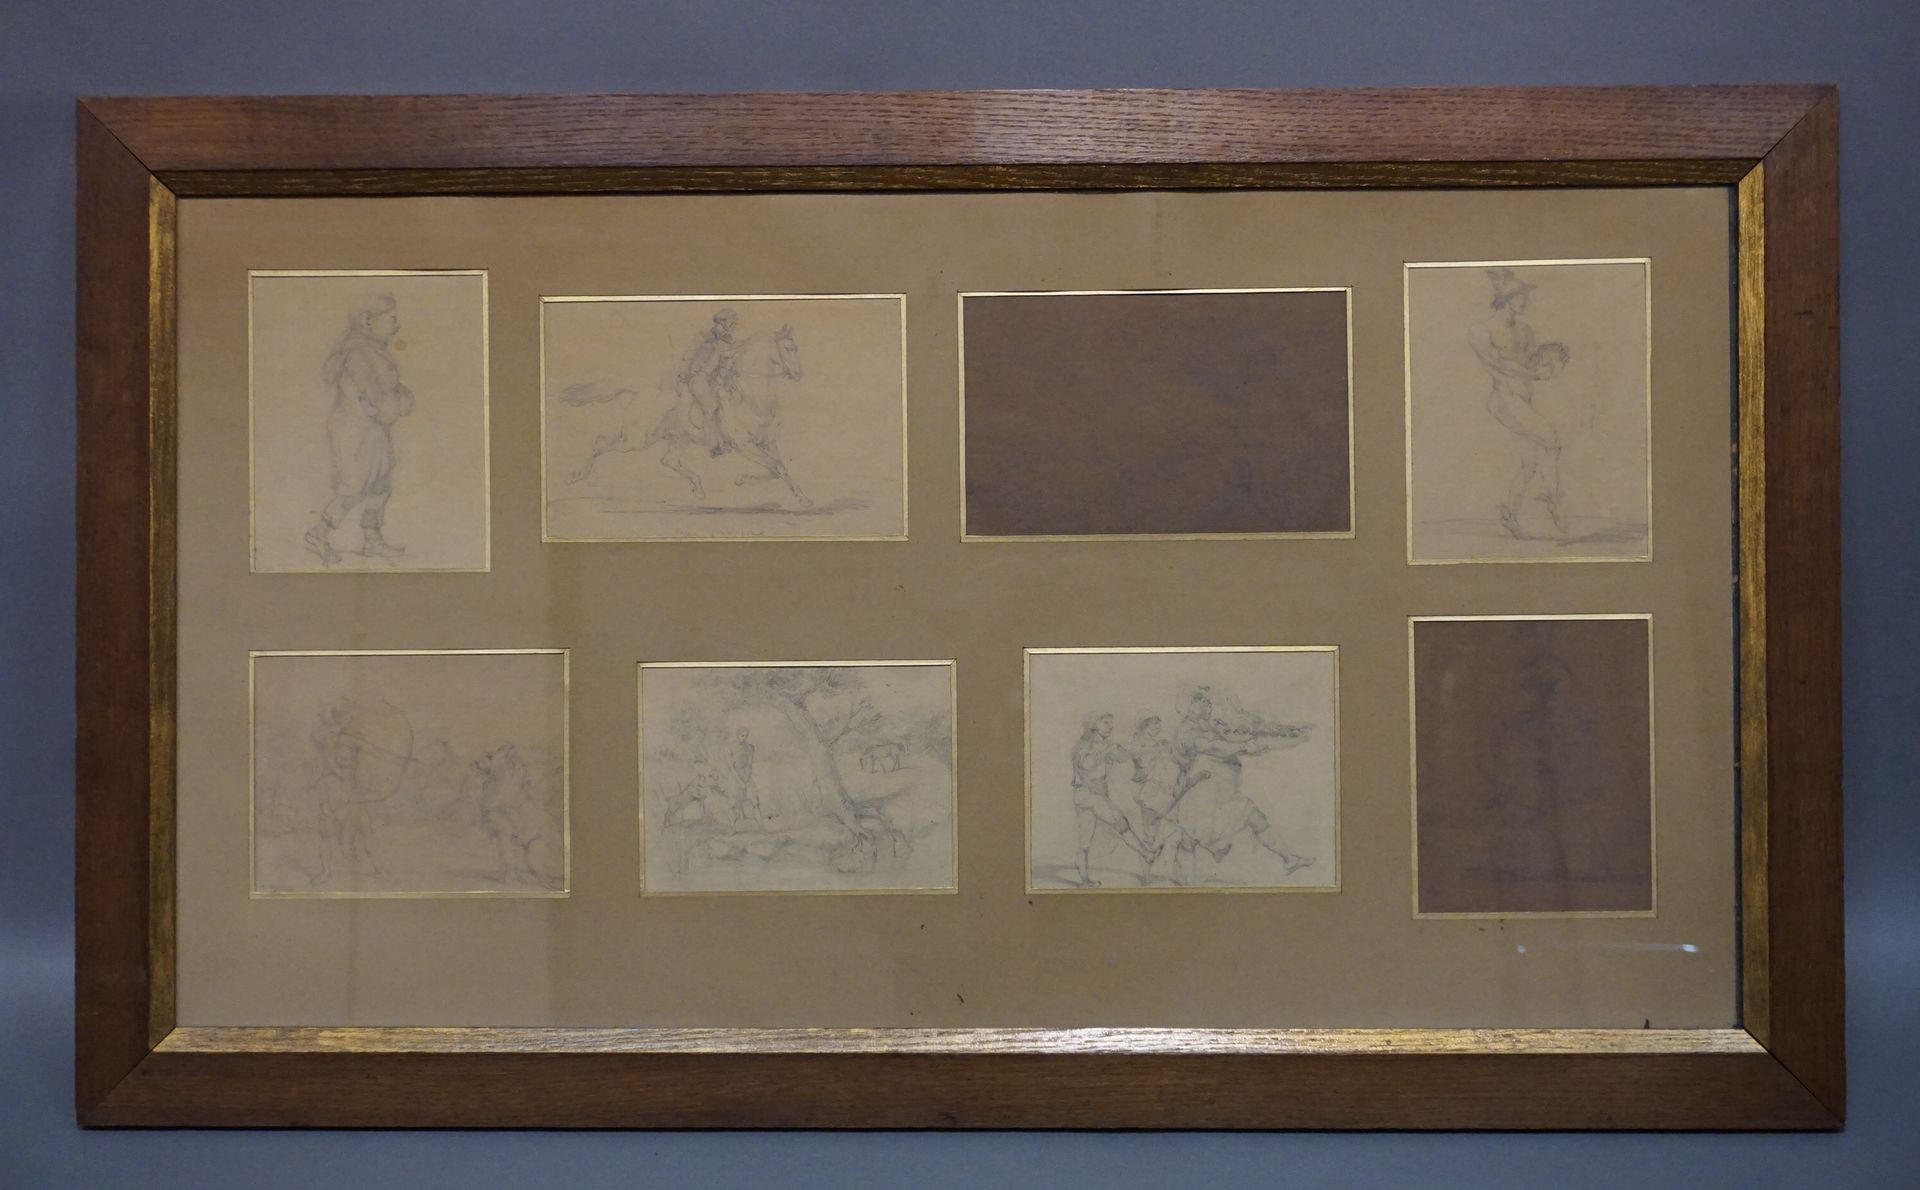 H. REGNAULT Cadre contenant 8 dessins: "Cavalier", "Scène de chasse", "Scène de &hellip;